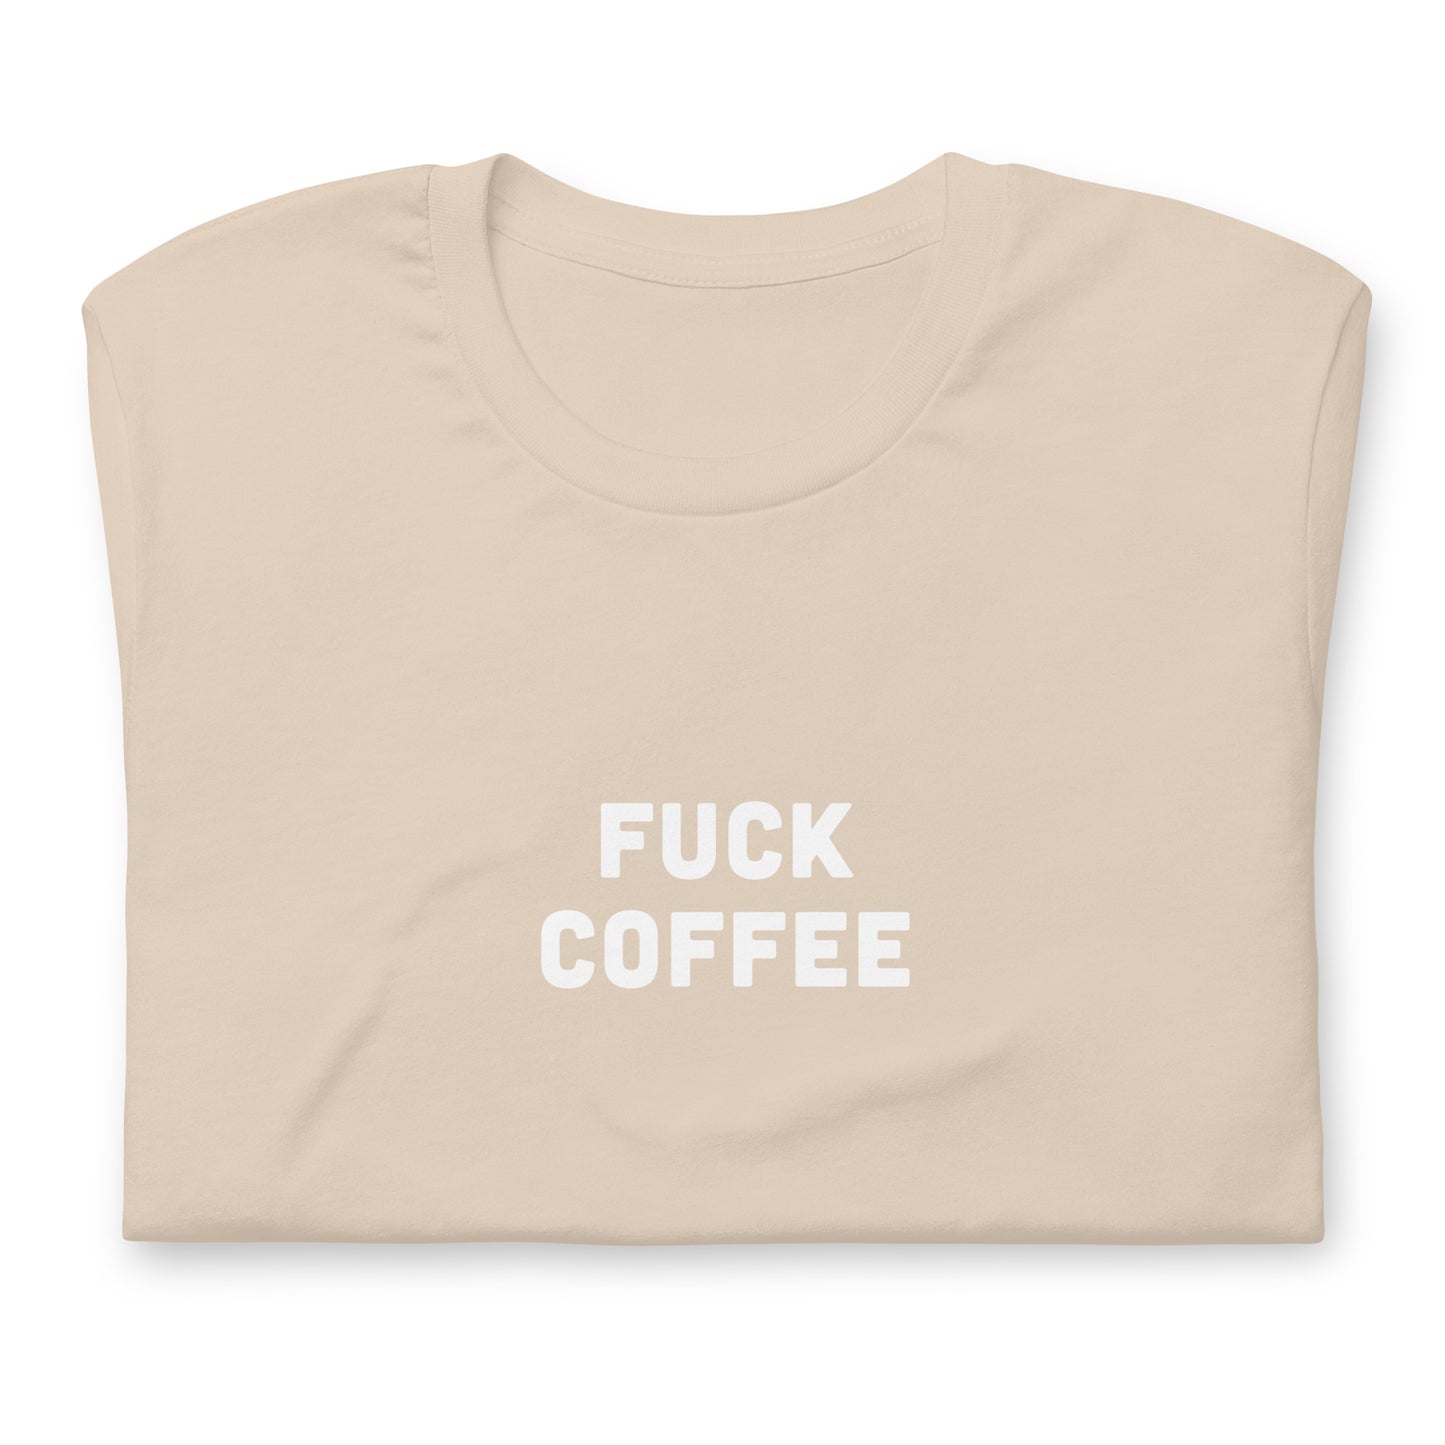 Fuck Coffee T-Shirt Size L Color Asphalt